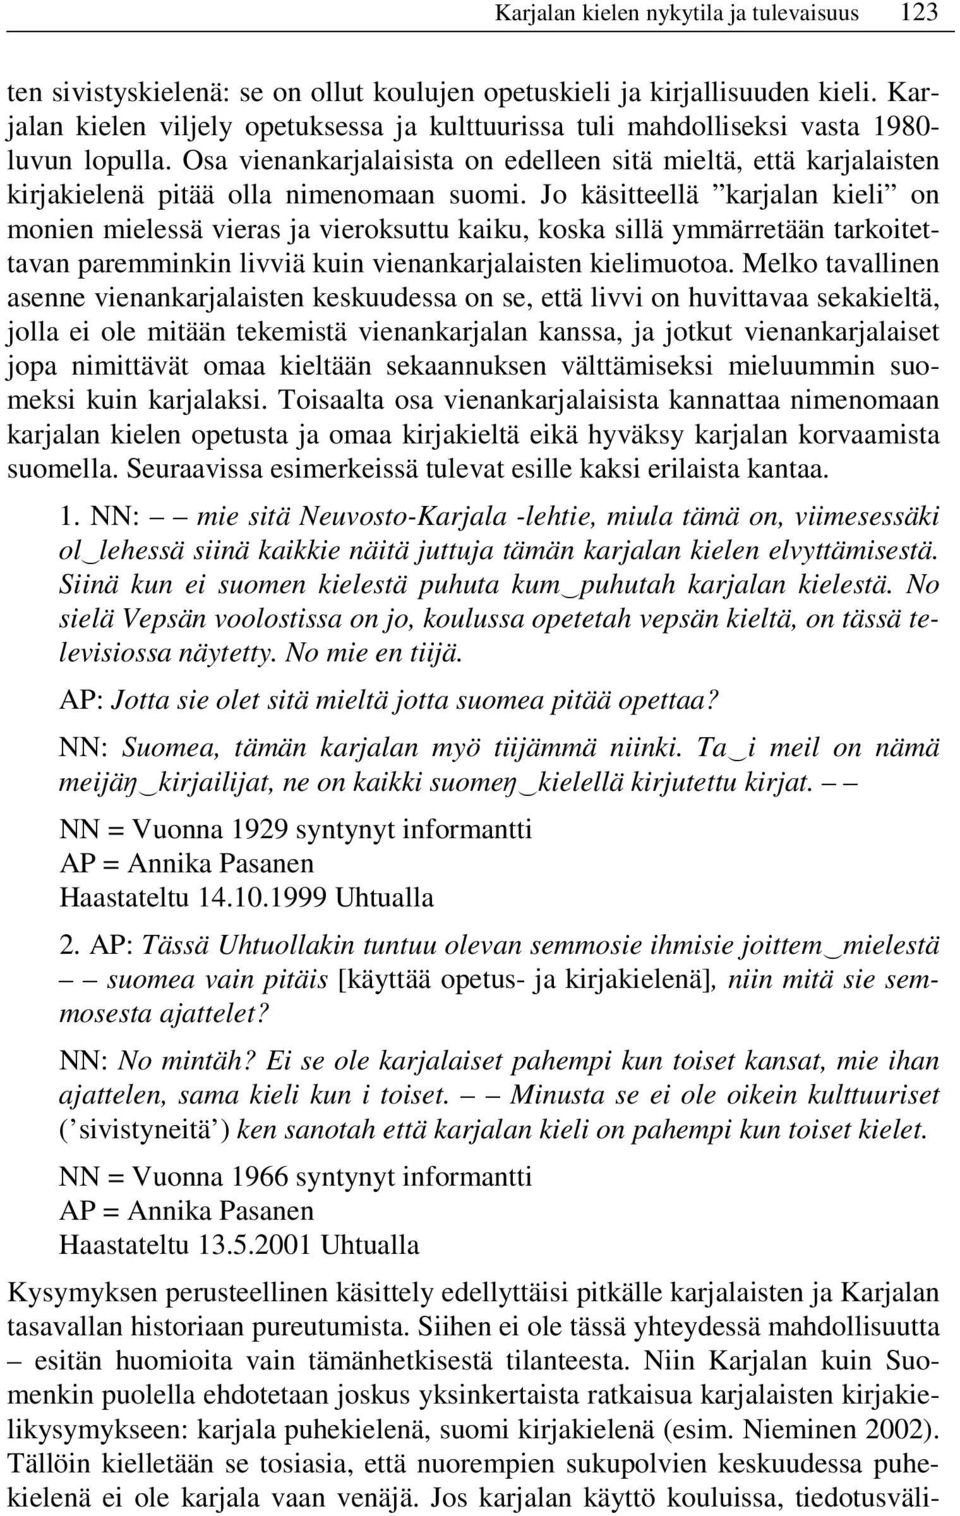 Osa vienankarjalaisista on edelleen sitä mieltä, että karjalaisten kirjakielenä pitää olla nimenomaan suomi.